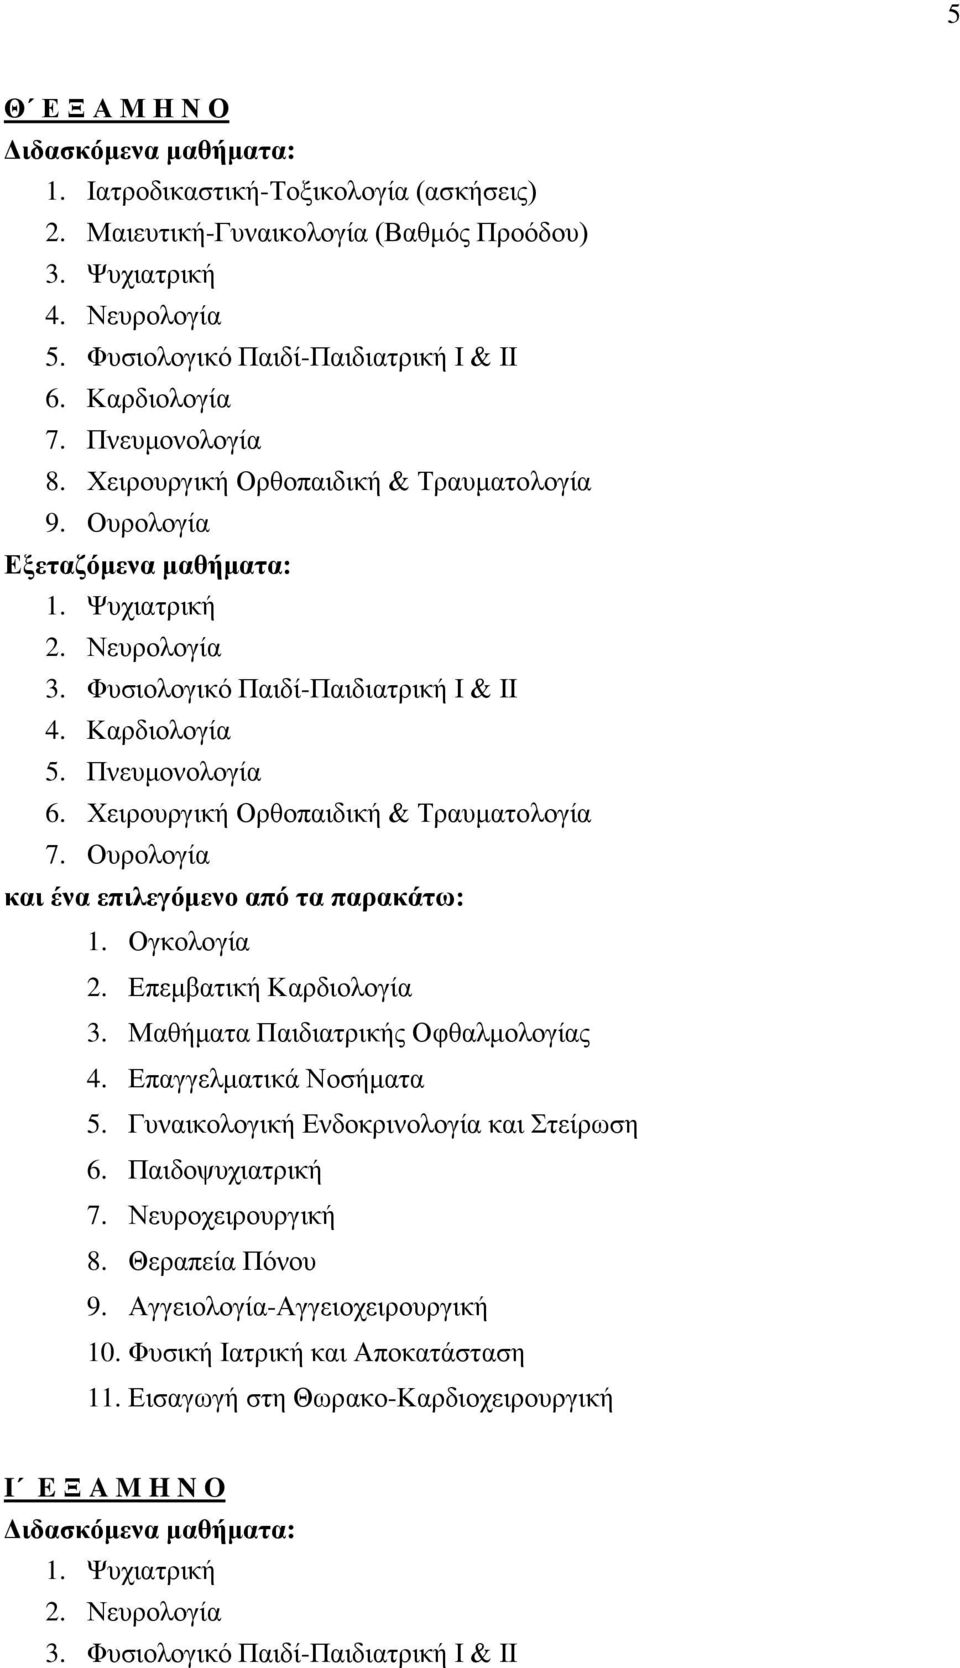 Πνευμονολογία 6. Χειρουργική Ορθοπαιδική & Τραυματολογία 7. Ουρολογία 1. Ογκολογία 2. Επεμβατική Καρδιολογία 3. Μαθήματα Παιδιατρικής Οφθαλμολογίας 4. Επαγγελματικά Νοσήματα 5.